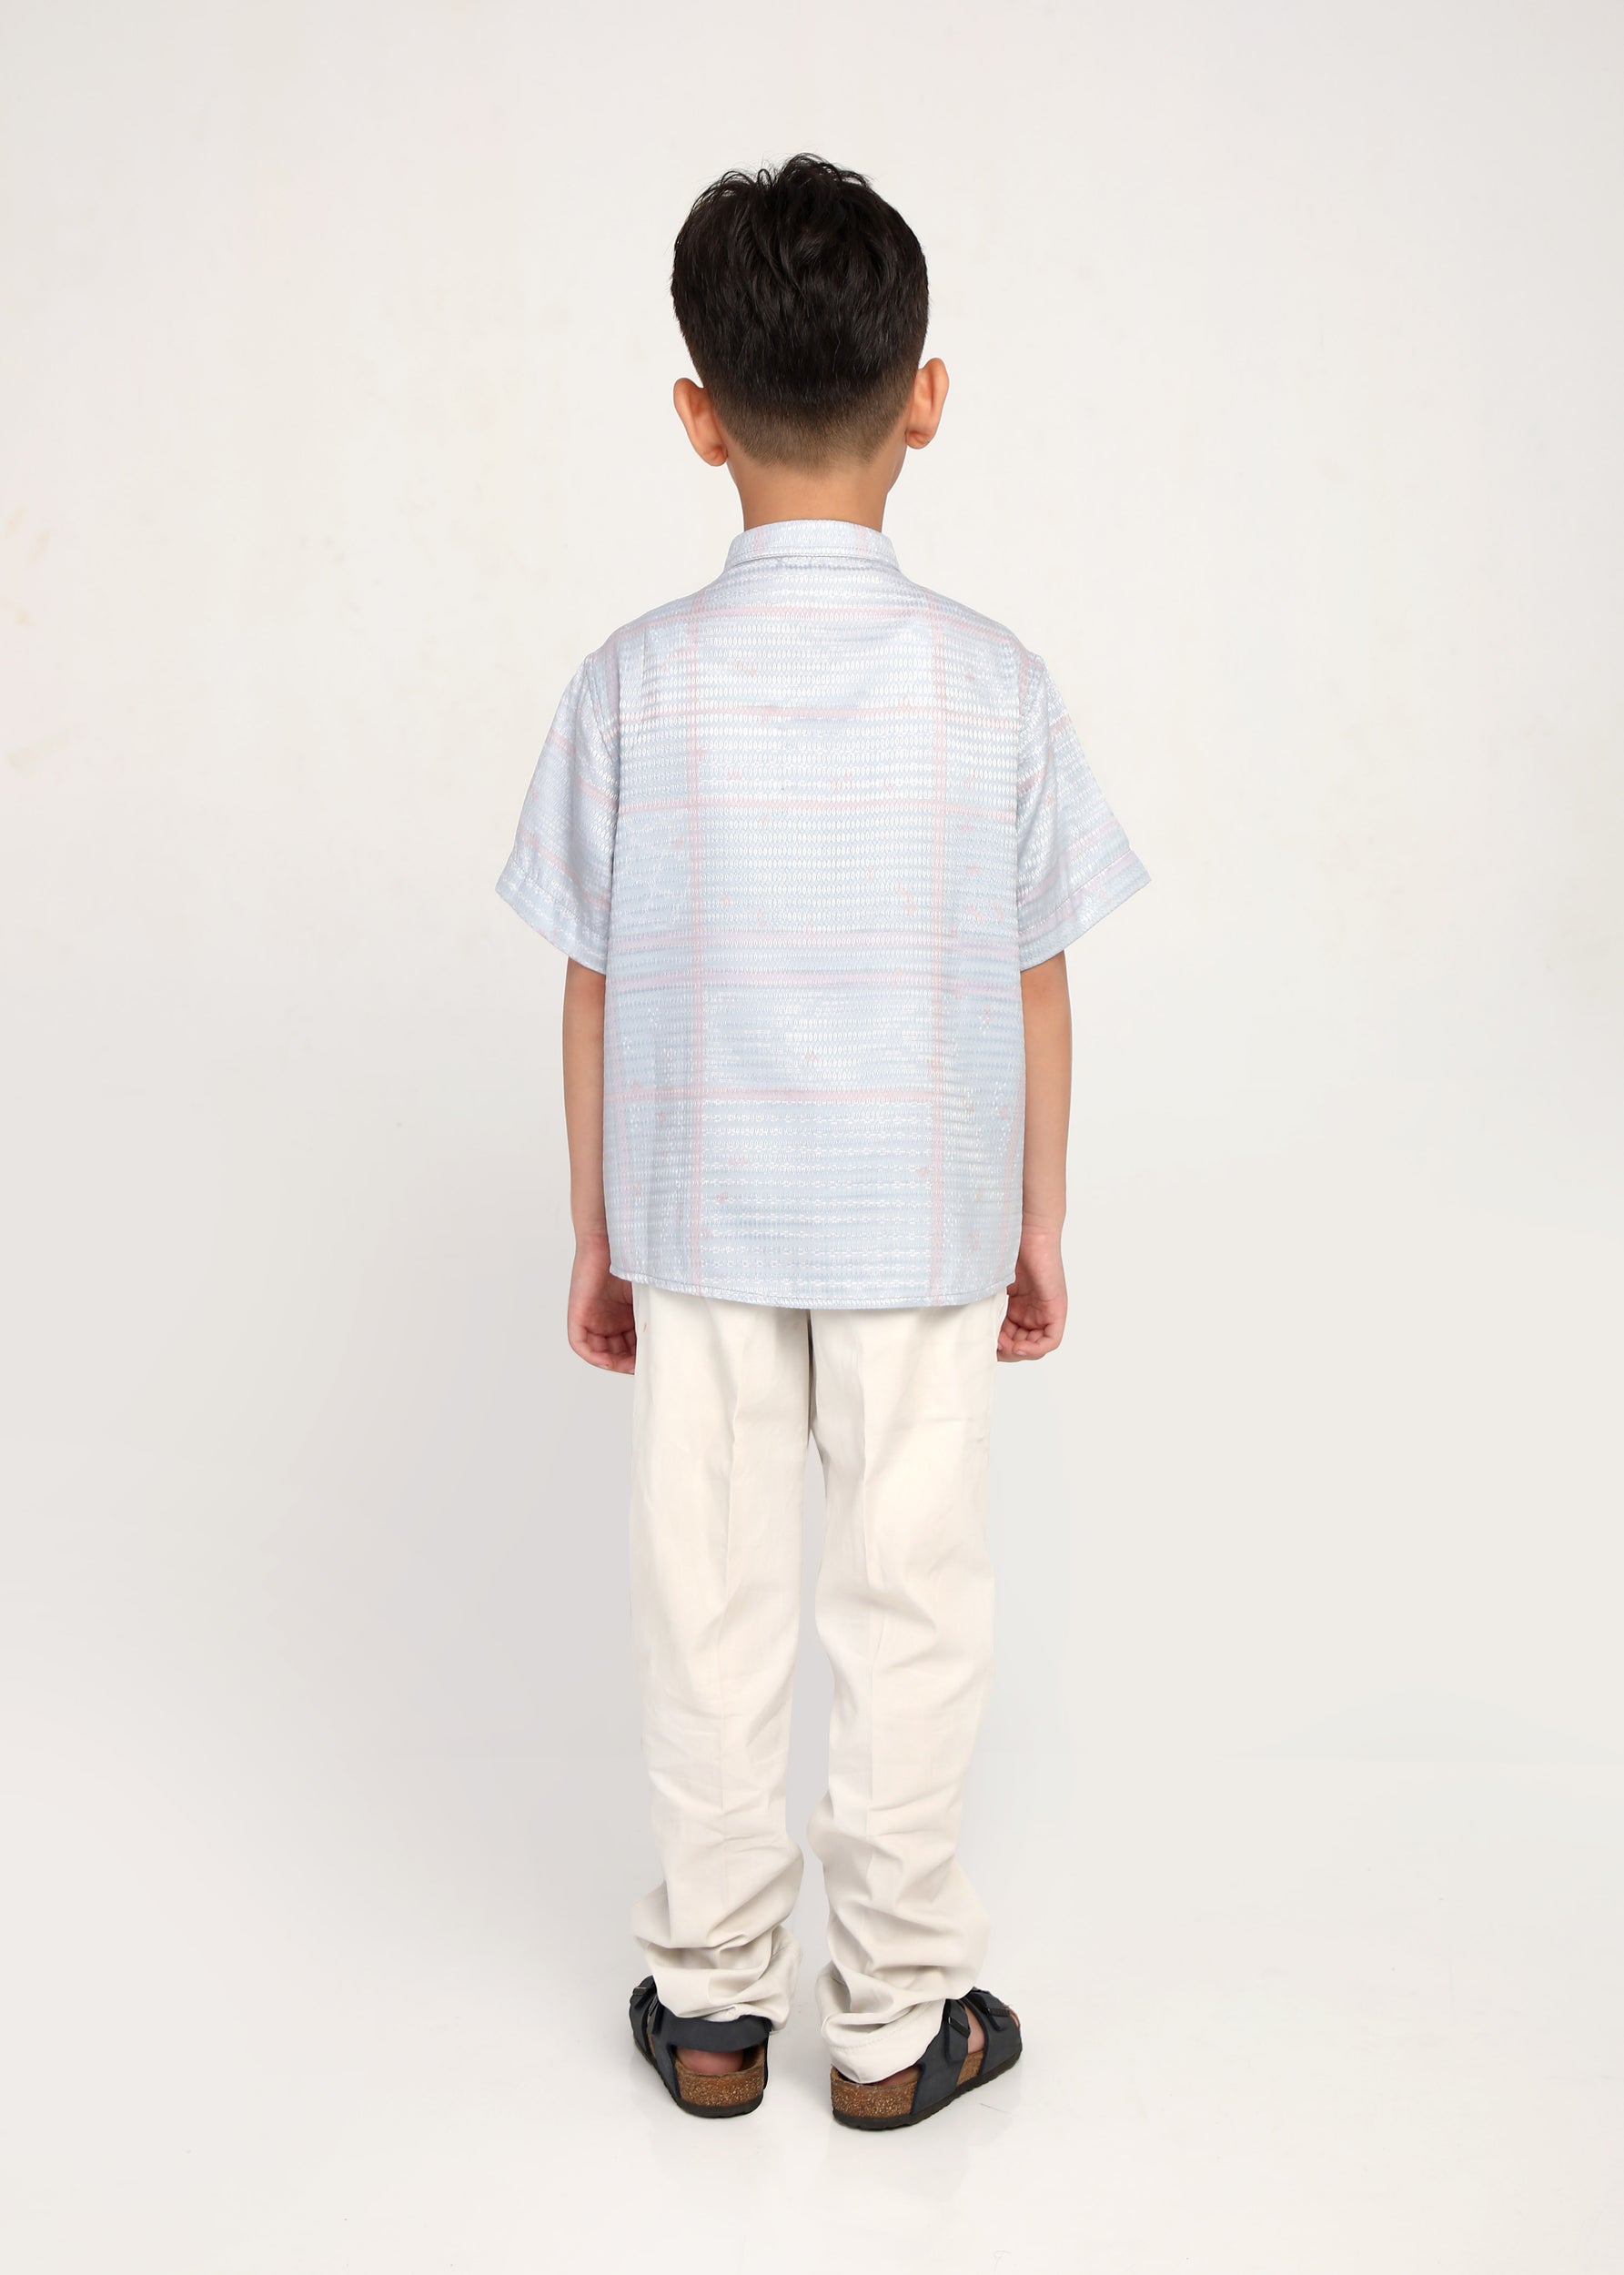 Hasu Boy Shirt (7-8 Y)